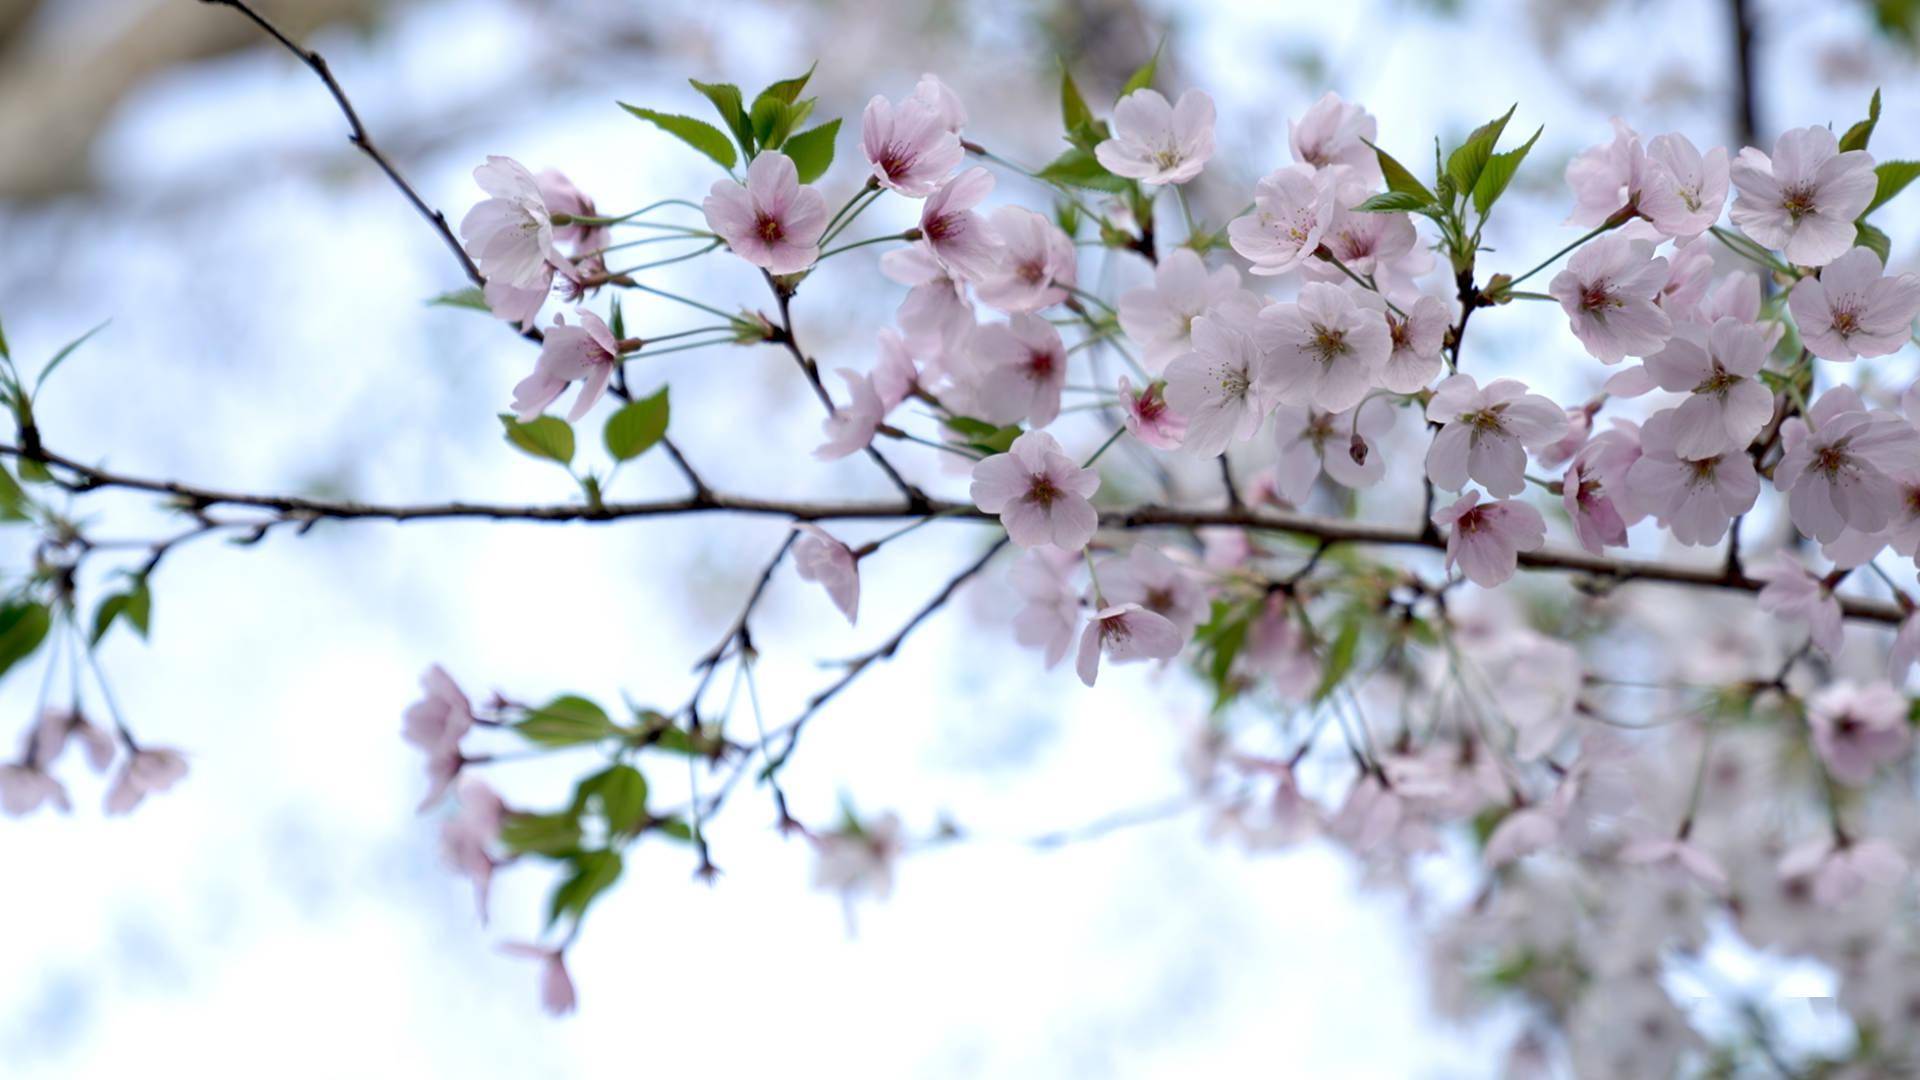 视频 | 在樱花林中赏一场汉服秀，在樱花树下品一杯樱花咖啡冰沙，在樱花灯里开启“走花路”的夜生活……